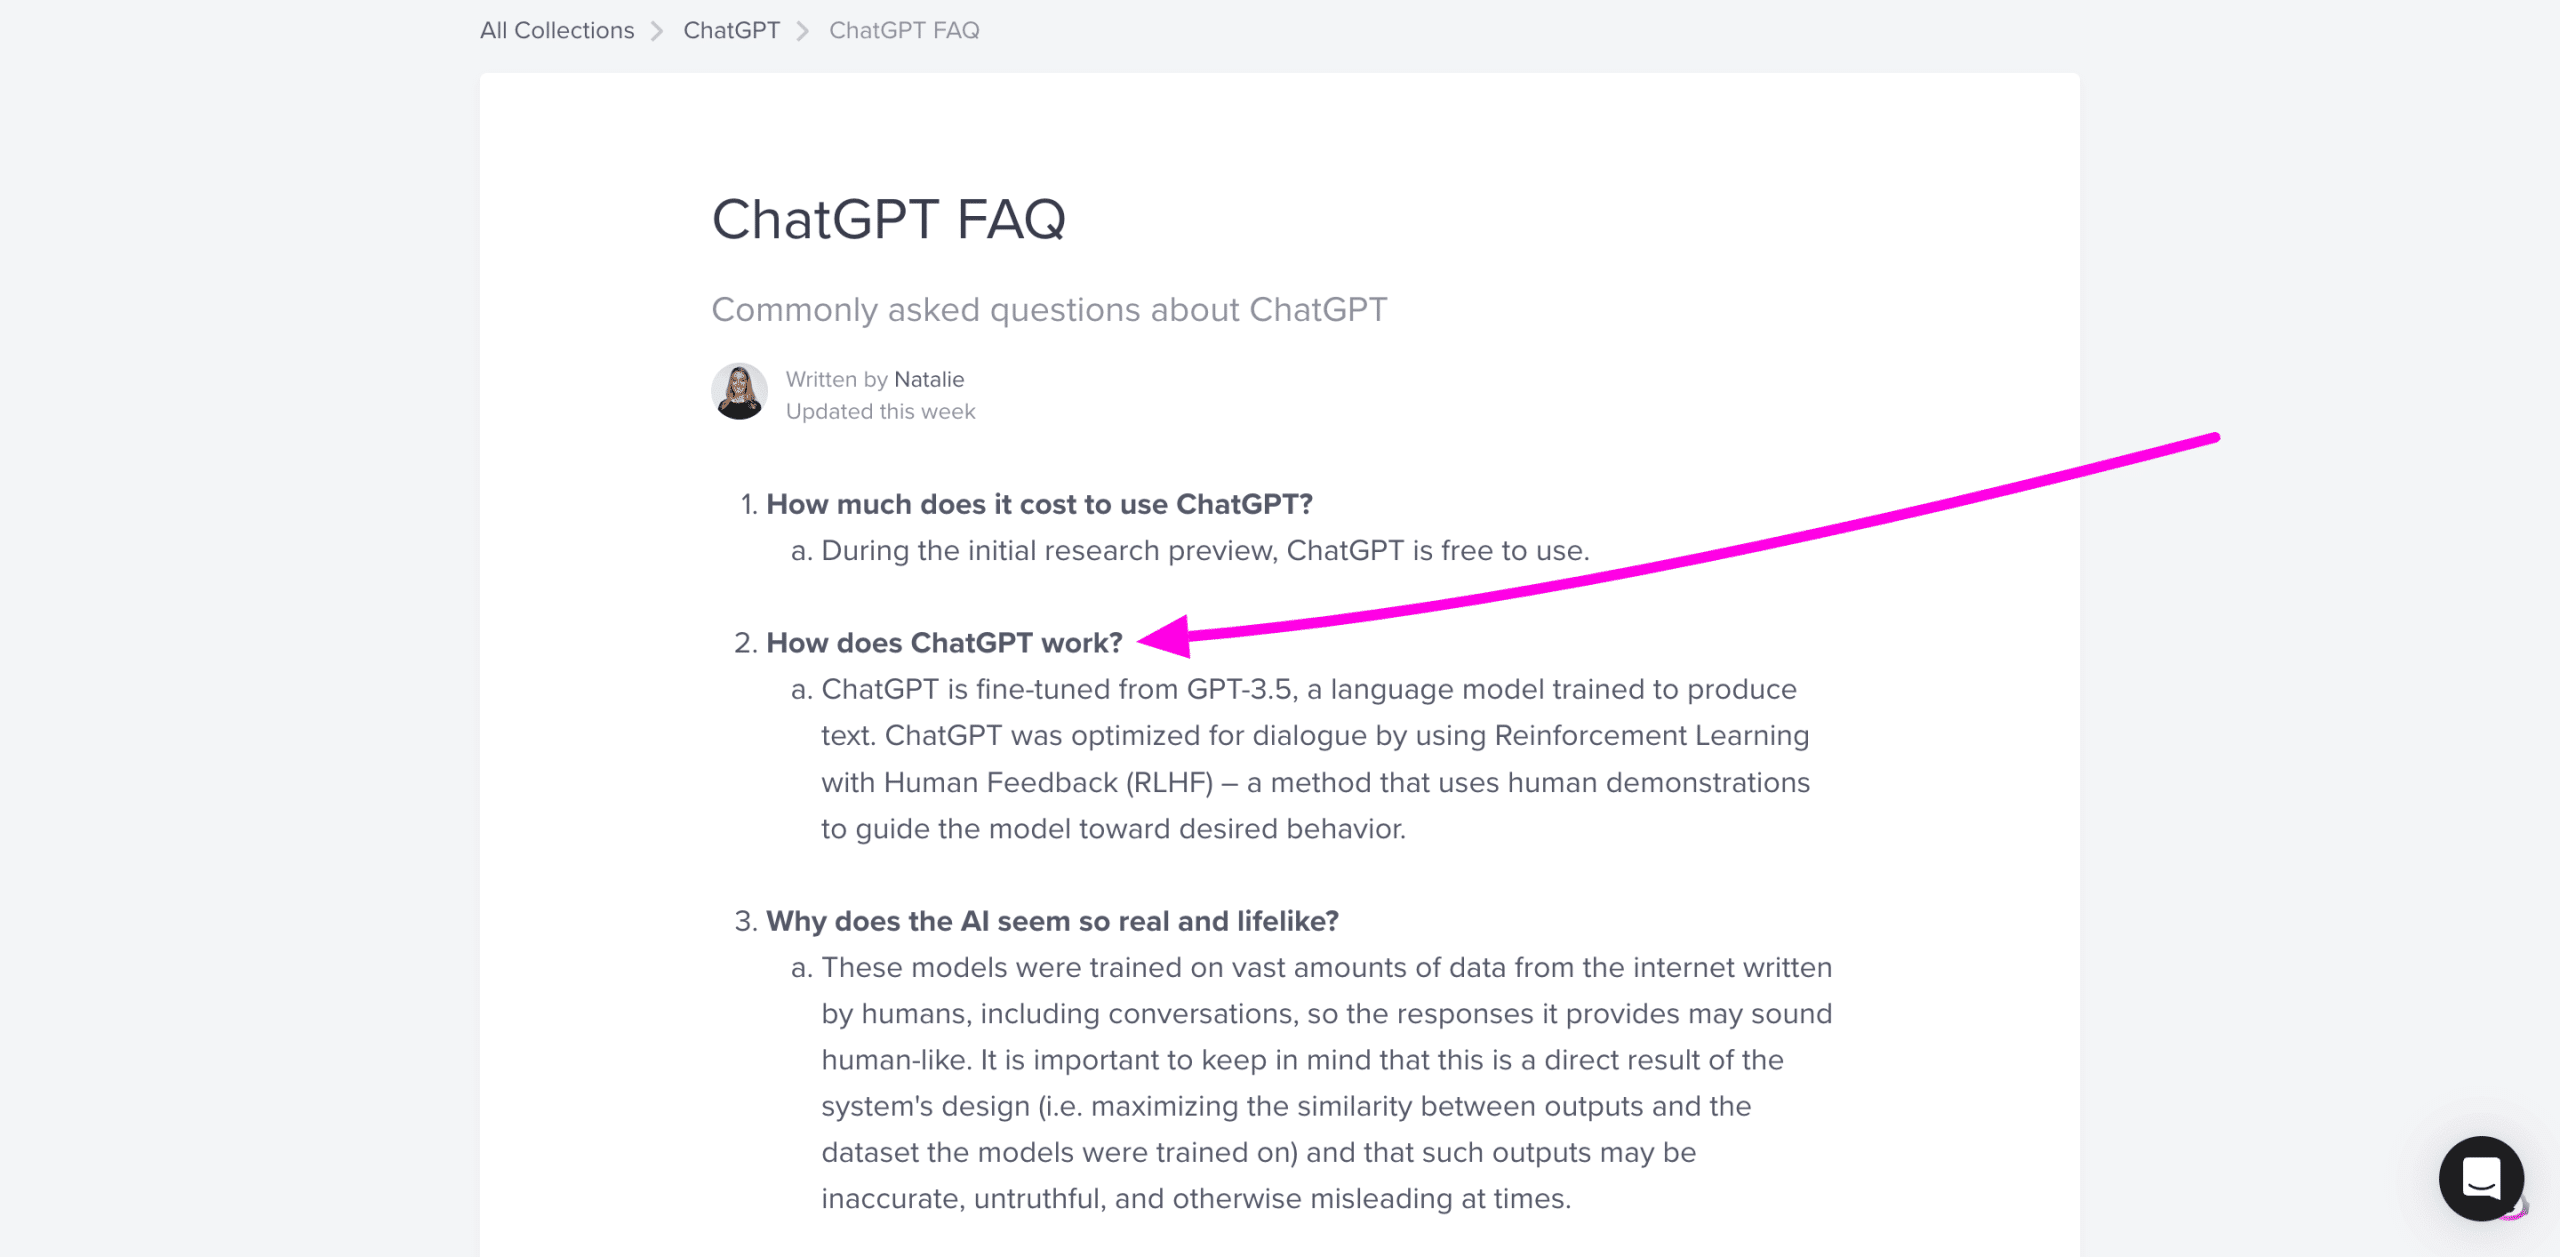 ChatGPT FAQ: what is ChatGPT?